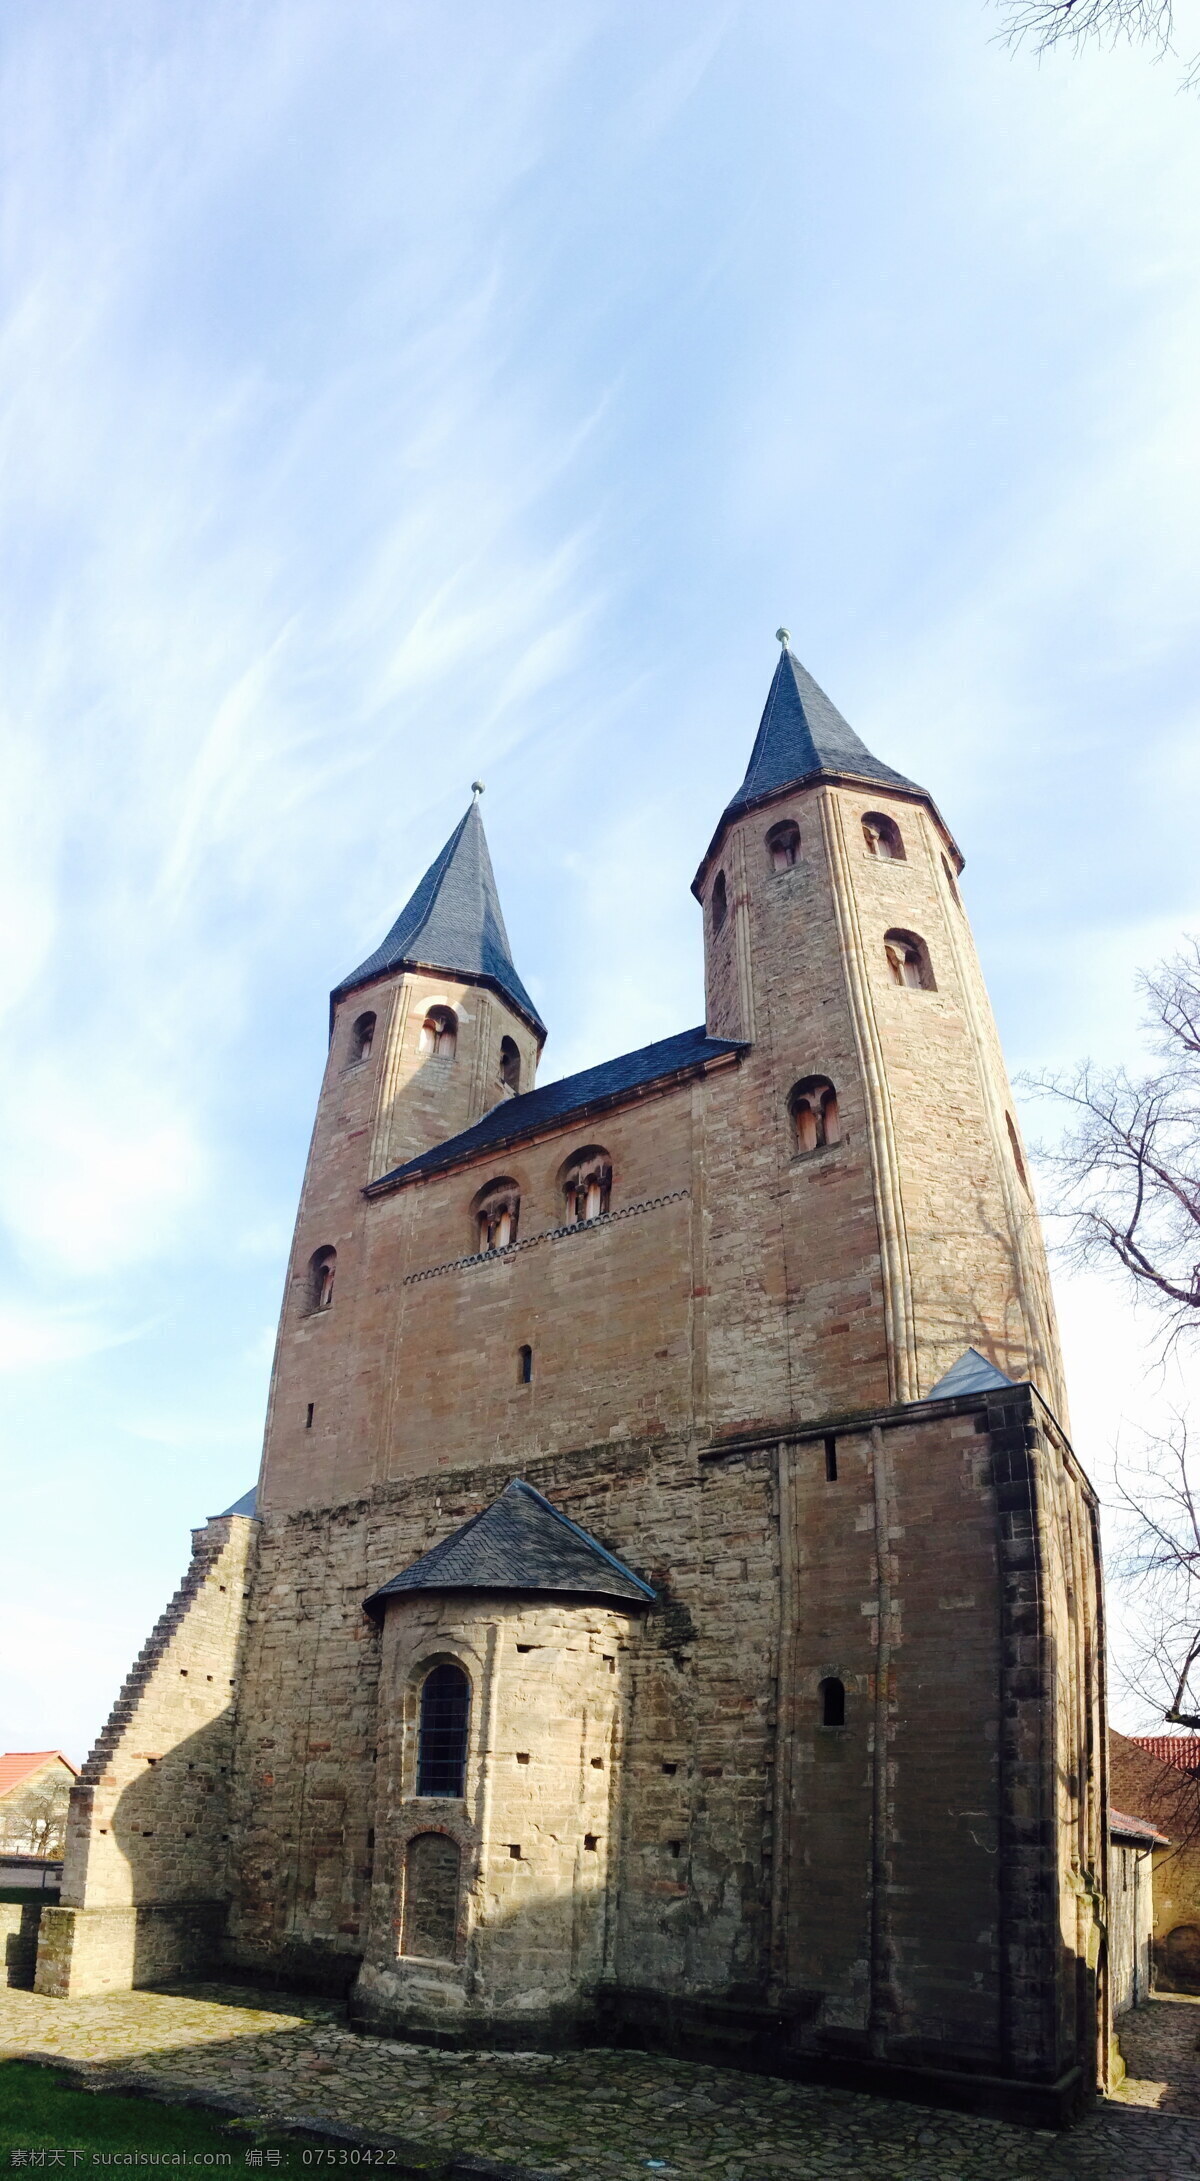 古老 欧洲 尖塔 城堡 修道院 修院 宗教 信仰 教堂 大教堂 建筑 古建筑 建筑物 建筑景观 分辨率 300 尺寸 白色